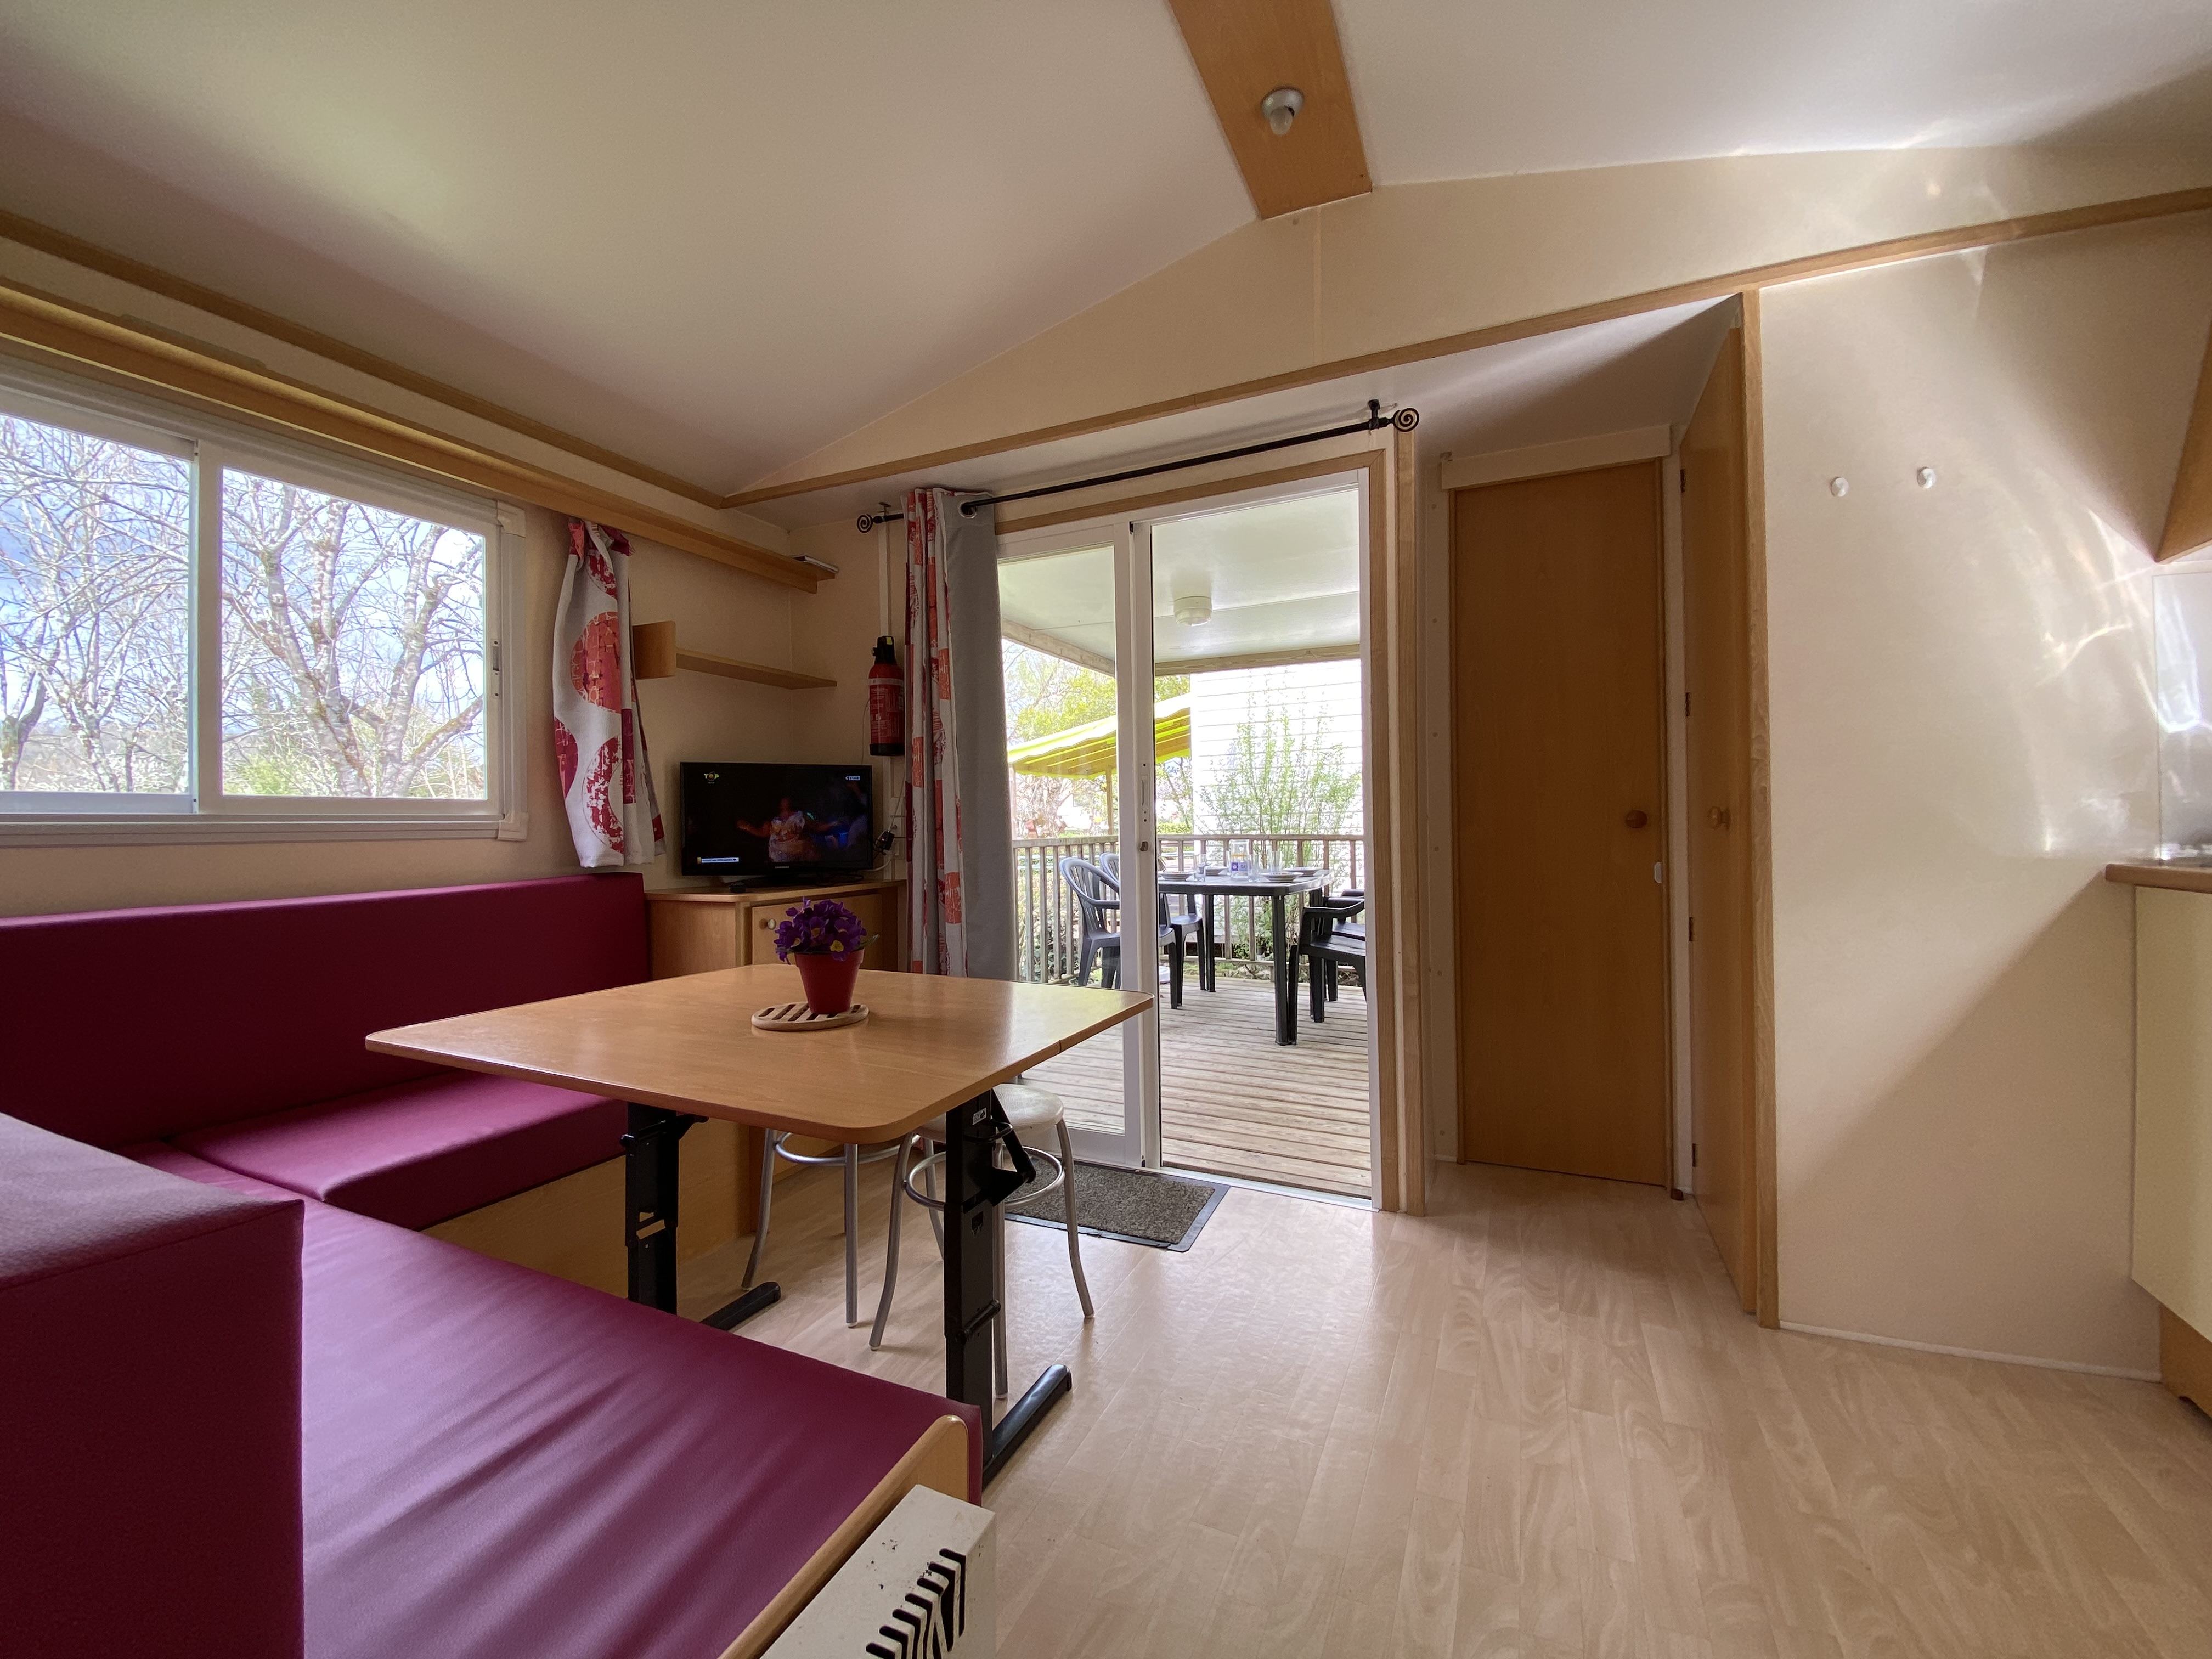 Mobil-home Roller 28m2, 2 chambres, TV, avec terrasse intégrée